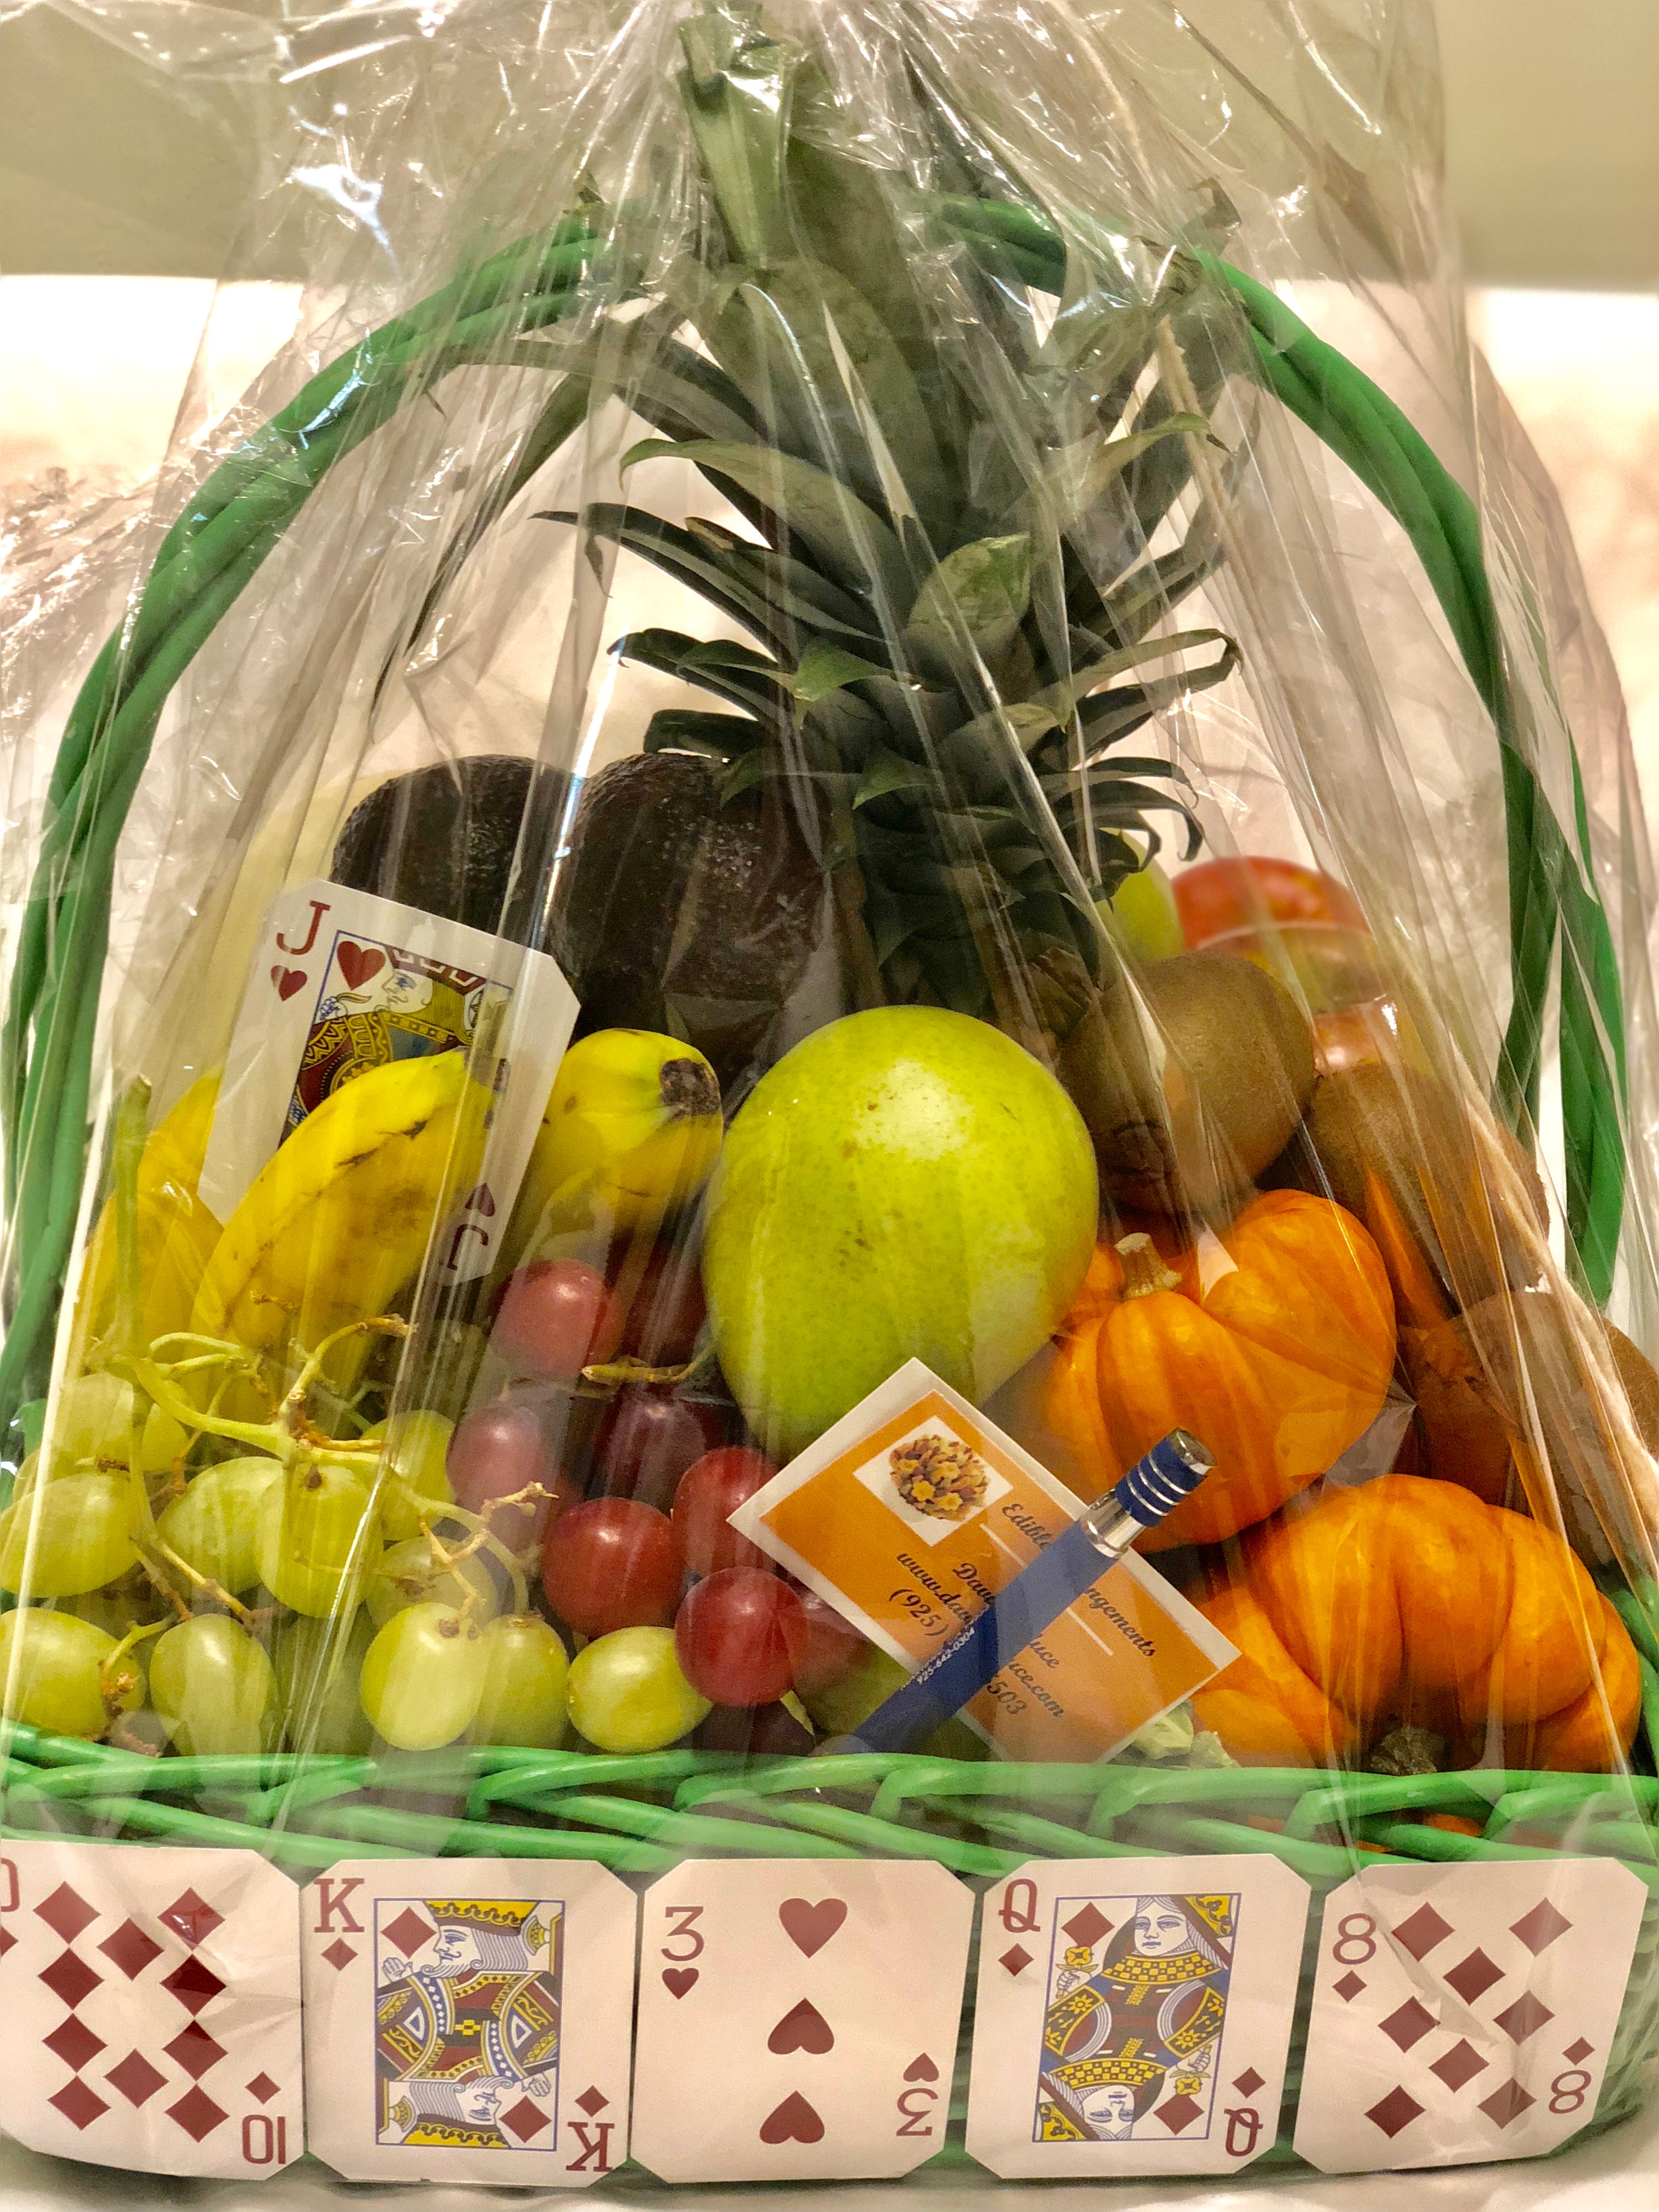 Fruit Arrangements and Baskets